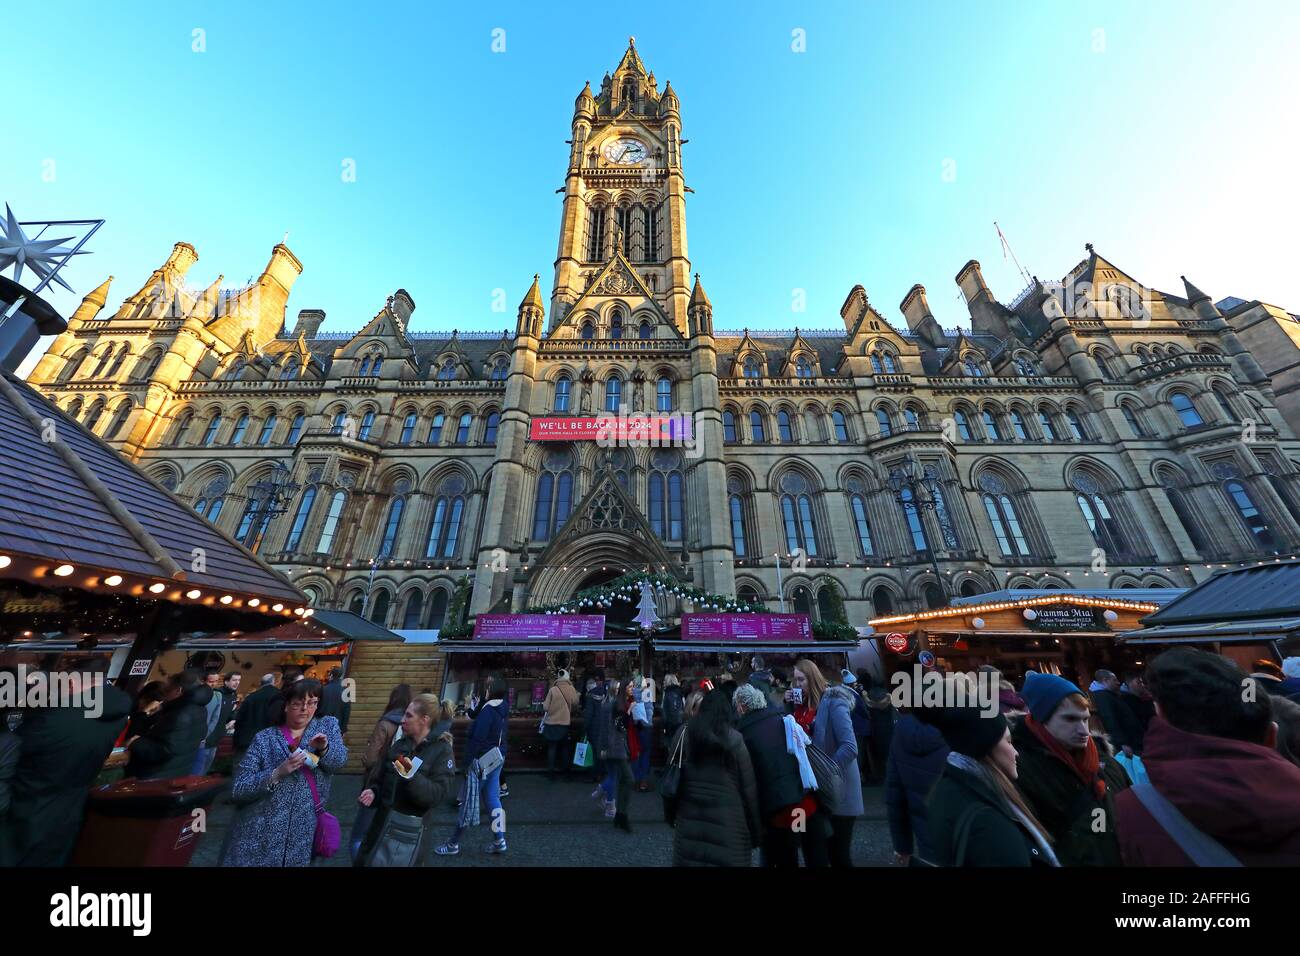 Mercatini di Natale, Municipio di Manchester, Albert Square, Manchester, Inghilterra, Regno Unito, M2 5DB Foto Stock